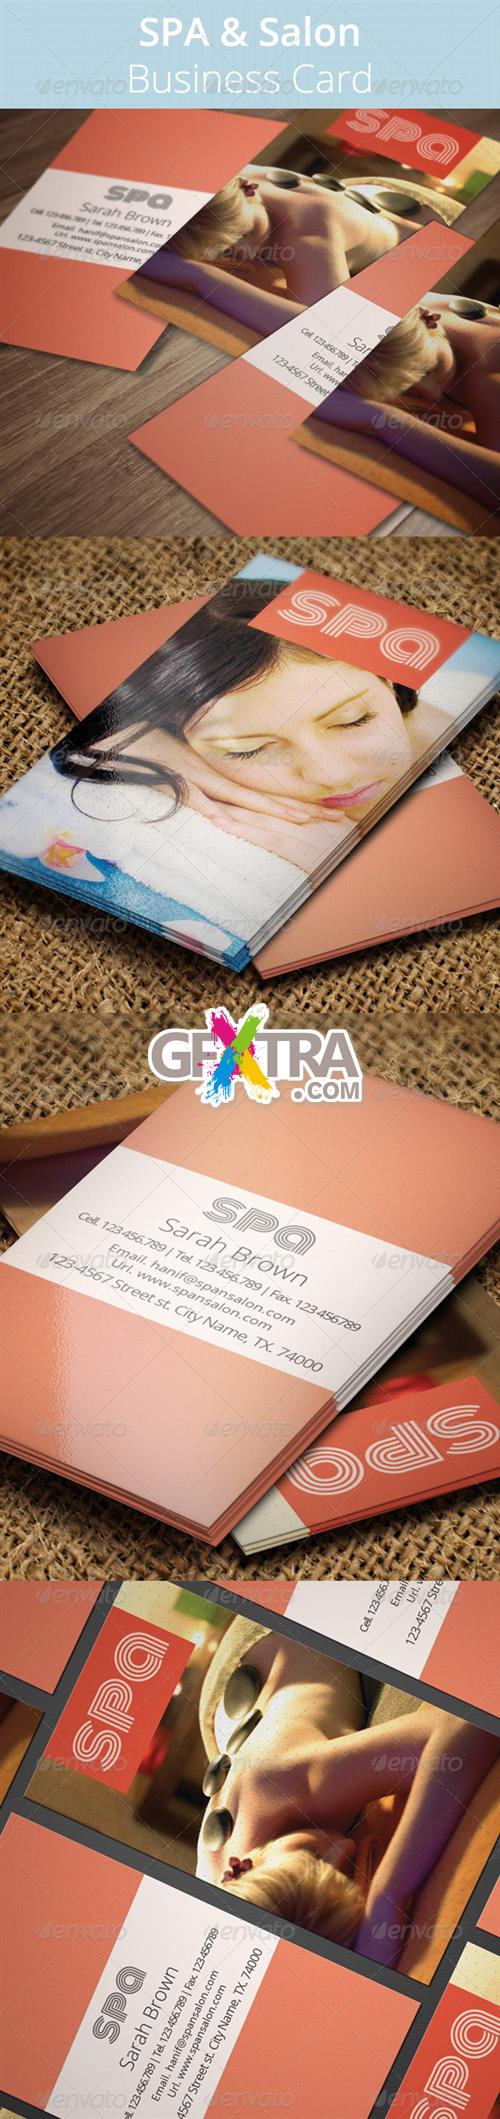 GraphicRiver - SPA & Salon Business Card